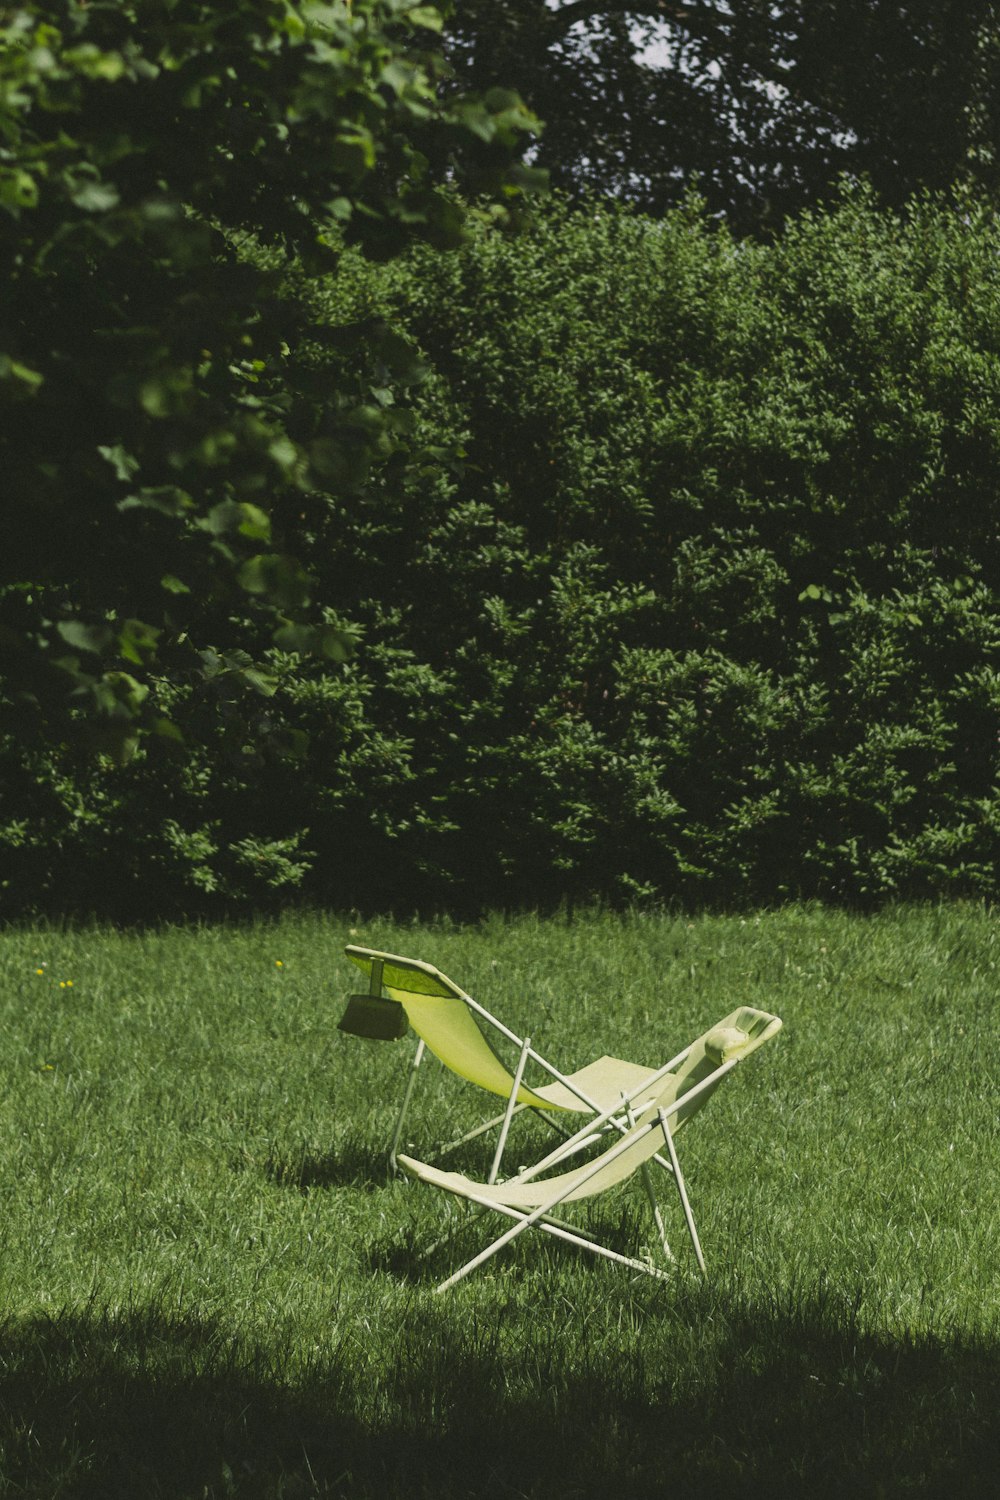 chair on grass field